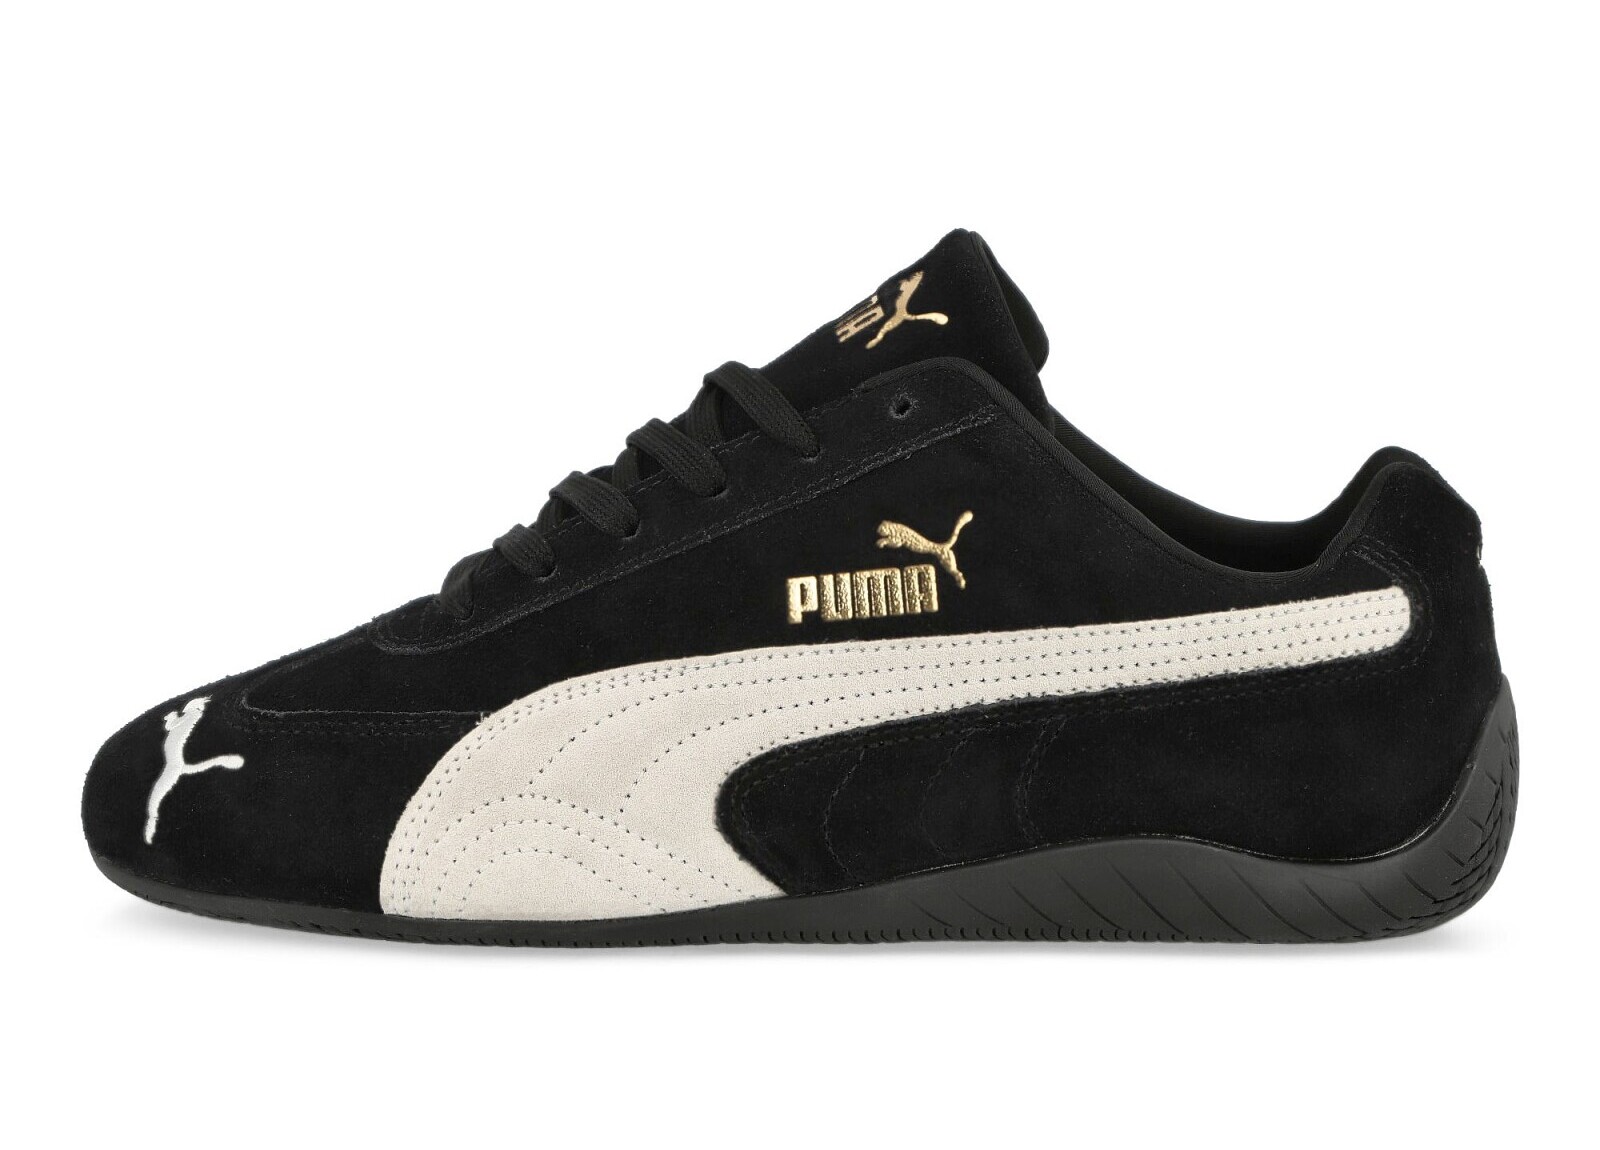 Puma Speedcat OG
Black / White